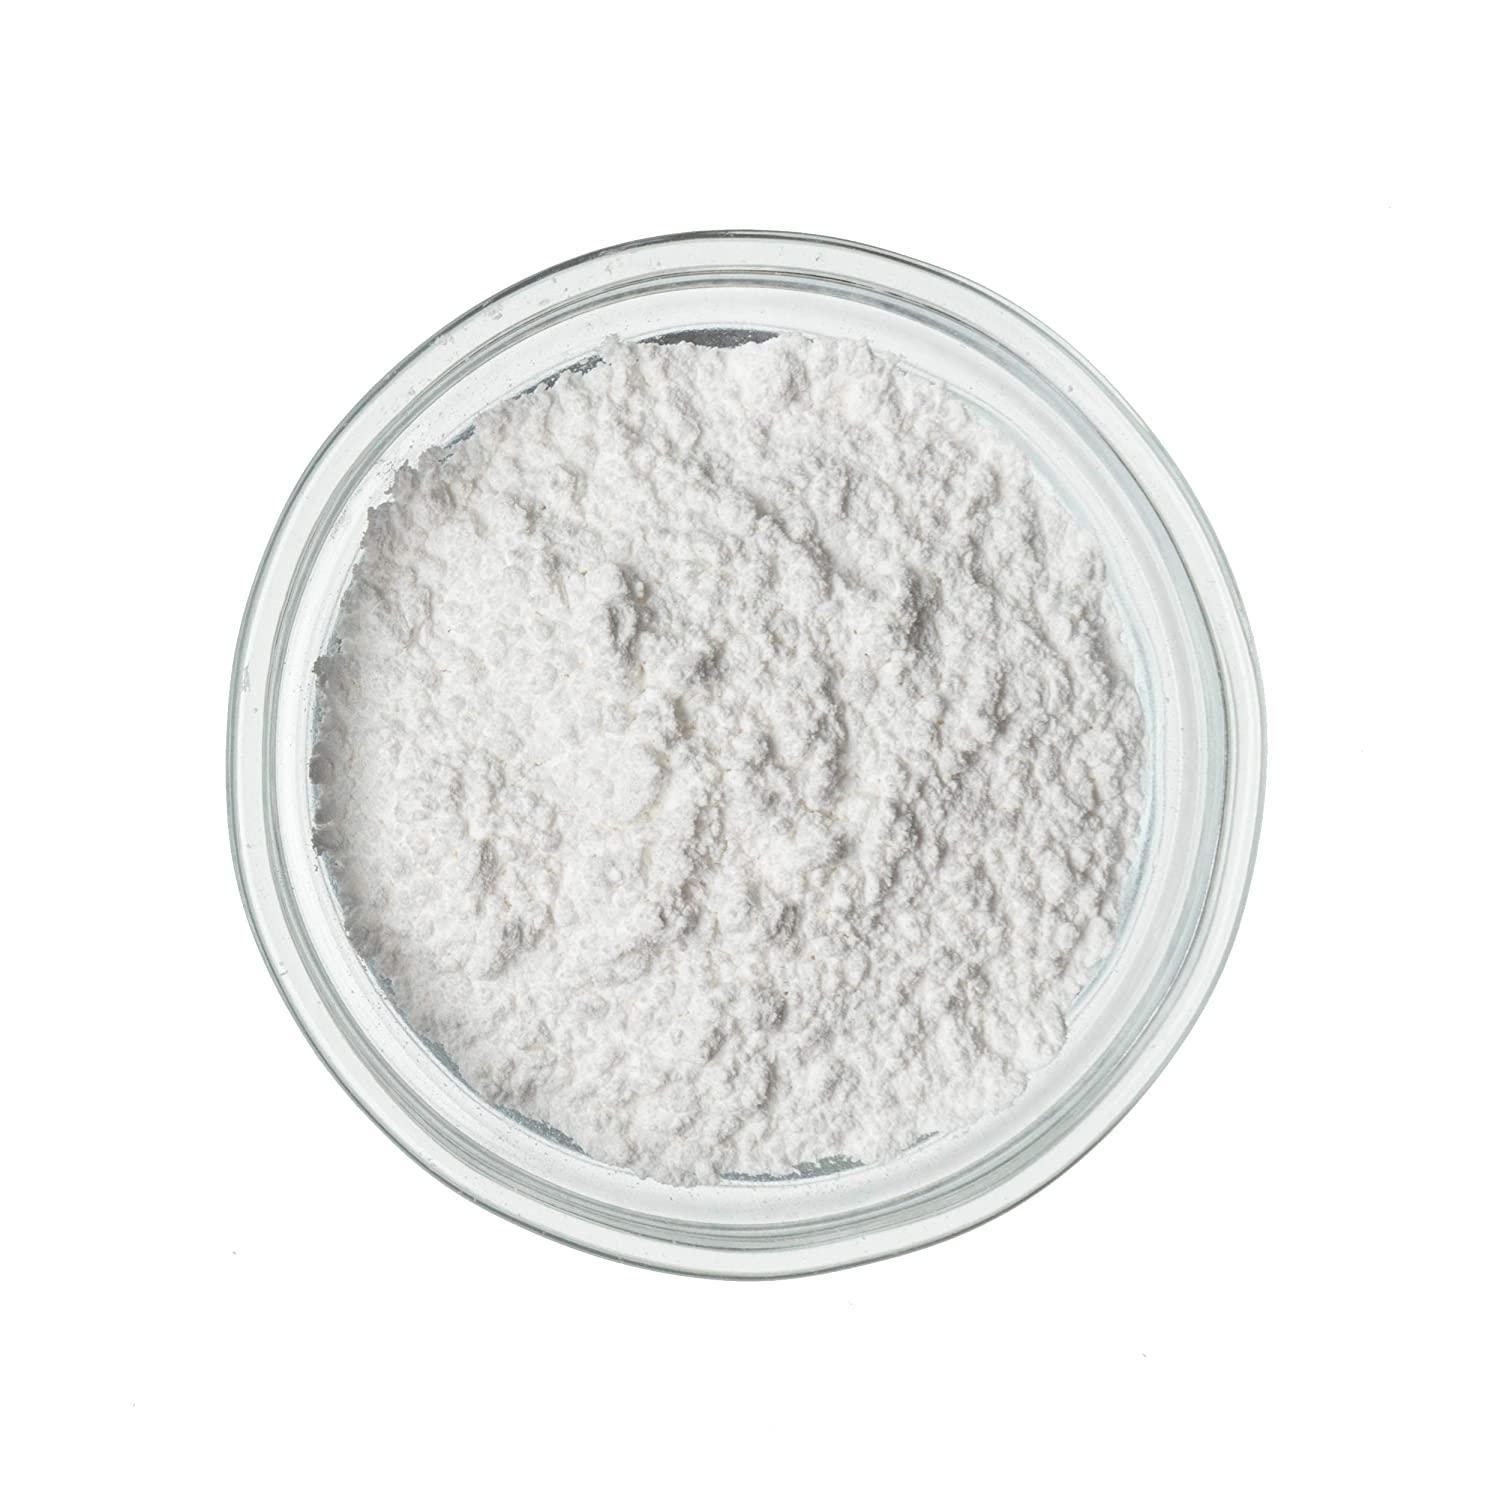 Calcium Carbonate (50g)